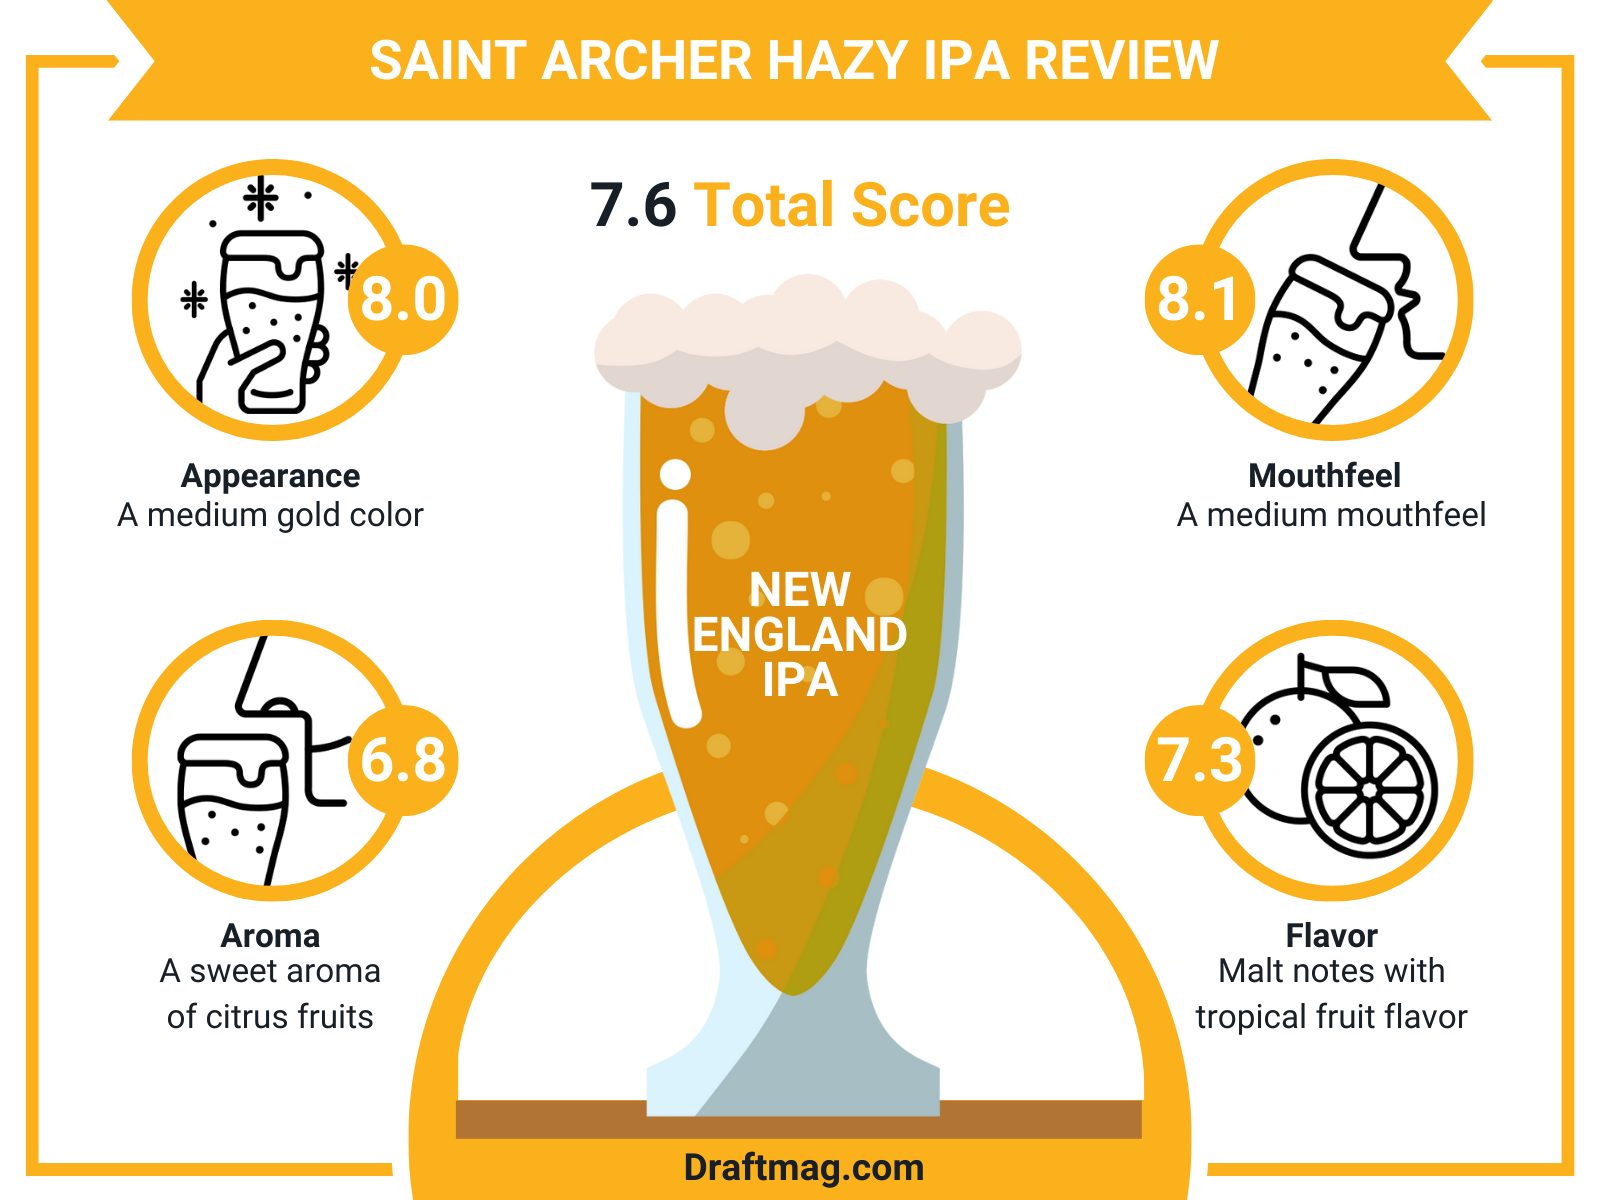 Saint Archer Review Infographic